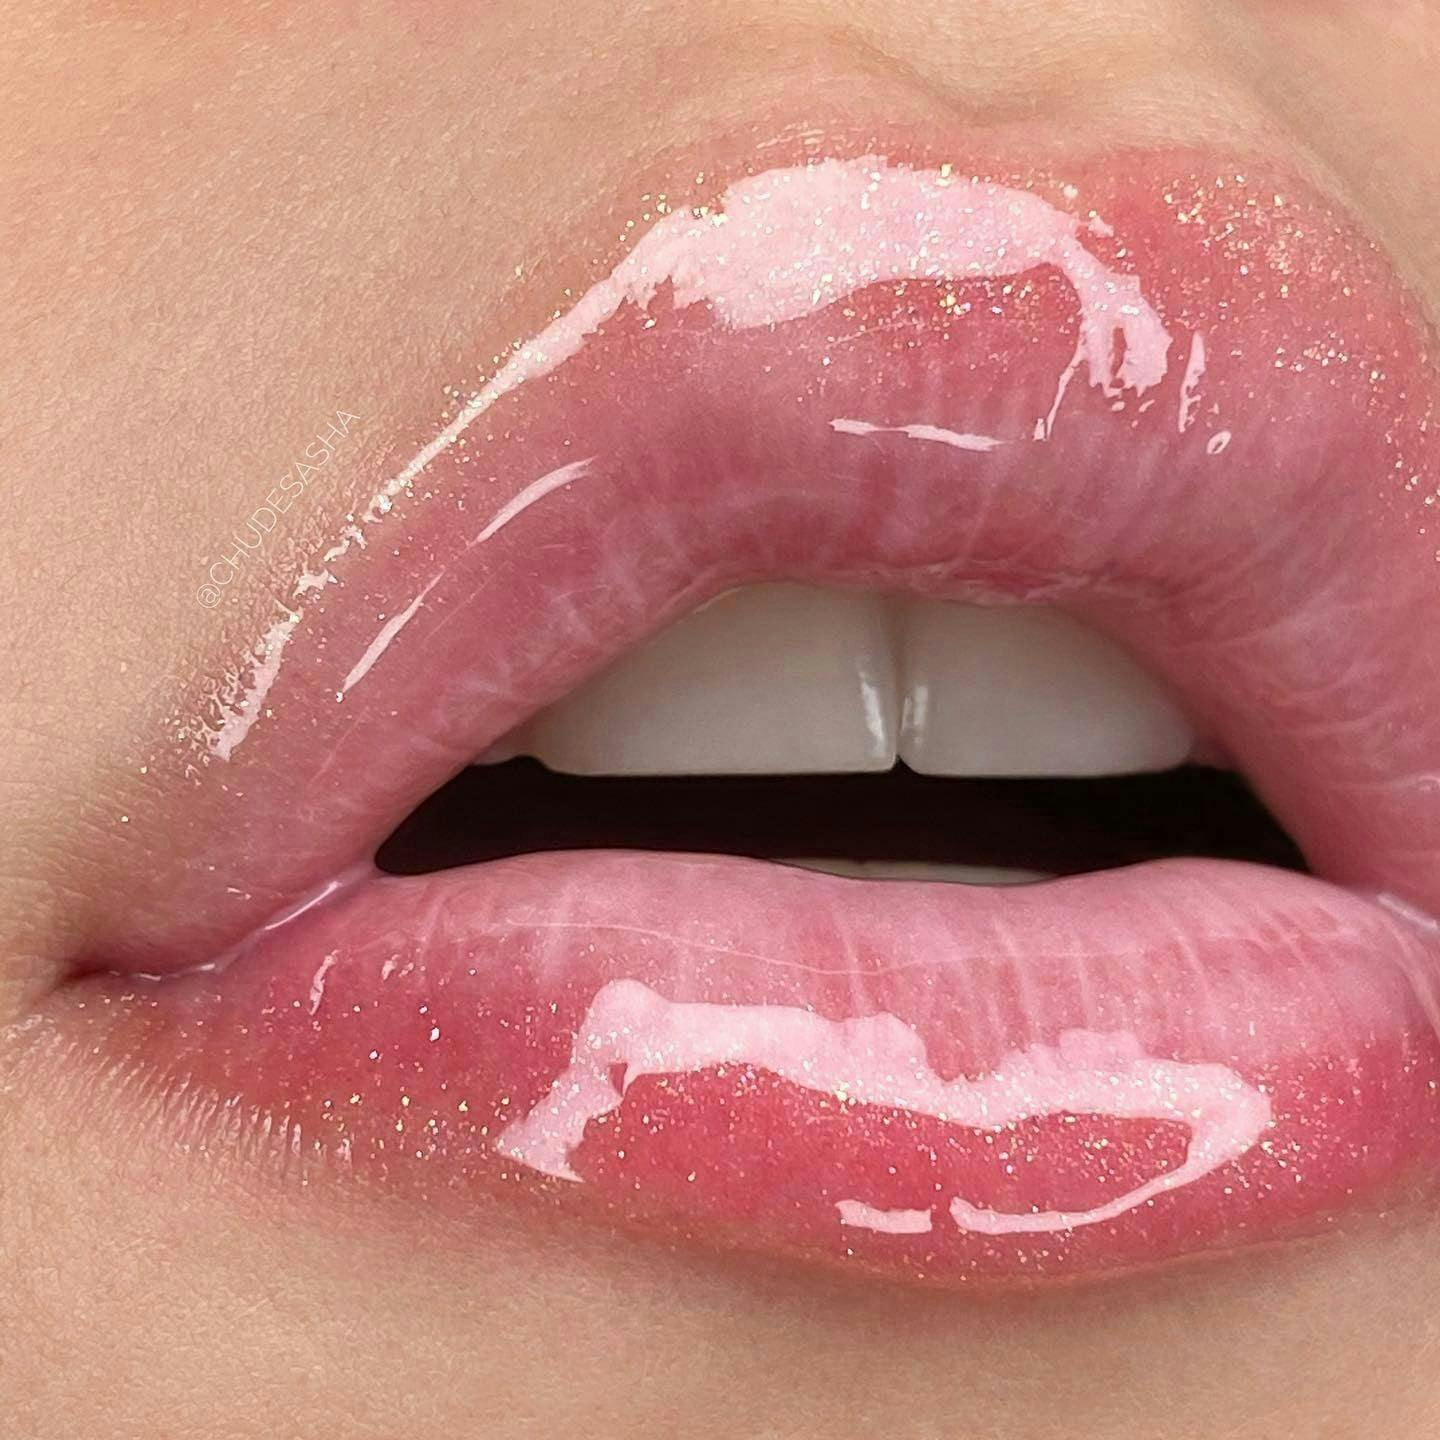 mouth lip